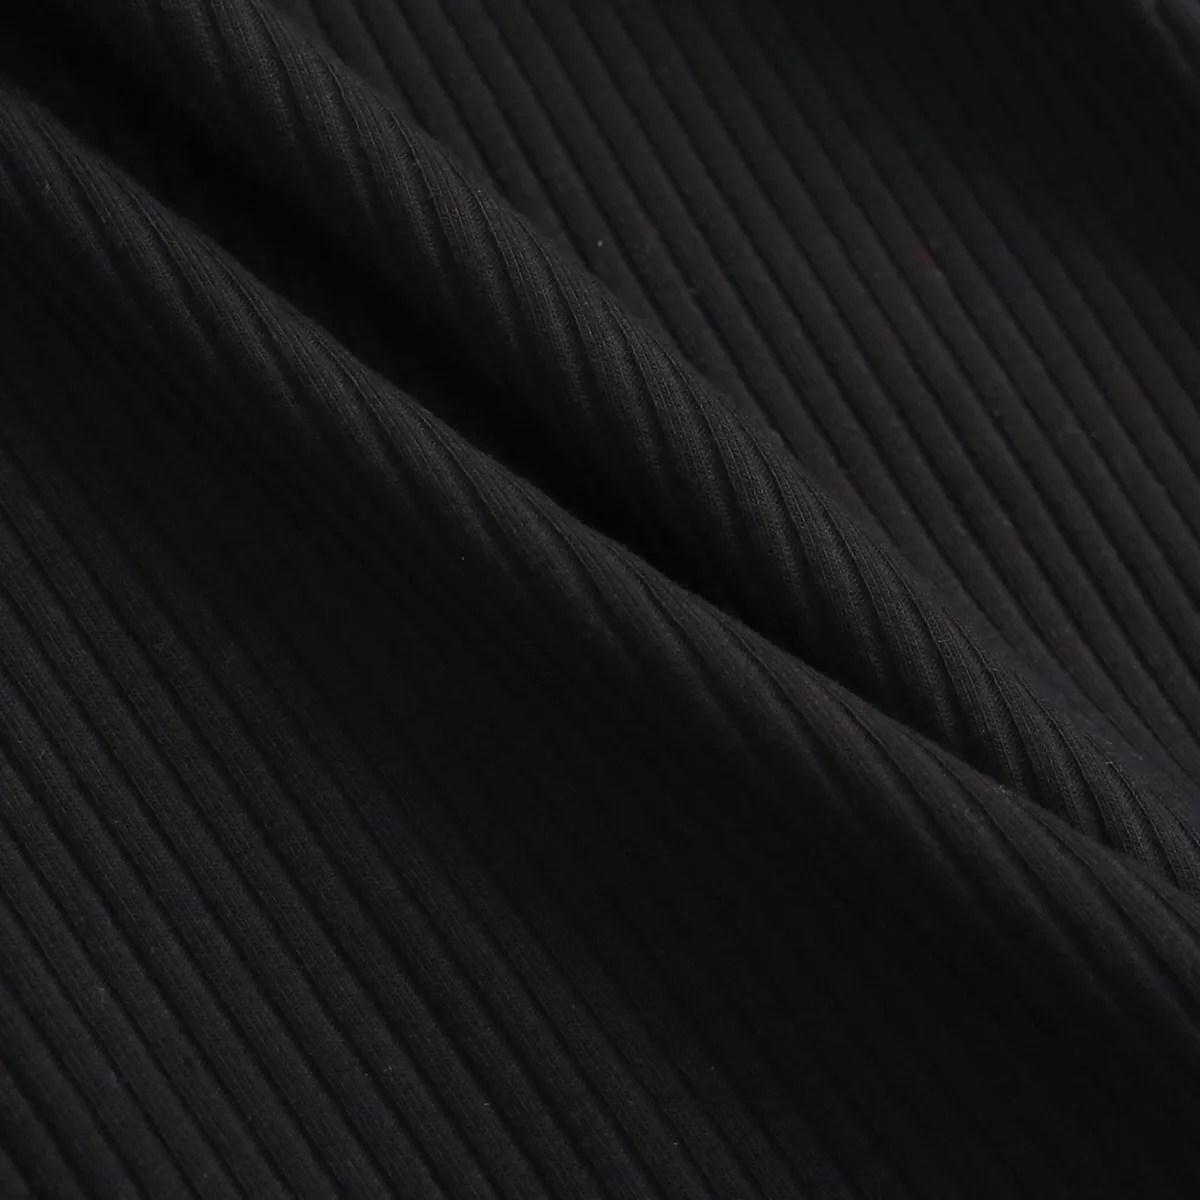 2-قطعة طفلة صغيرة الرقبة وهمية طويلة الأكمام مضلع أسود أعلى و زر تصميم مجموعة تنورة منقوشة أسود big image 1